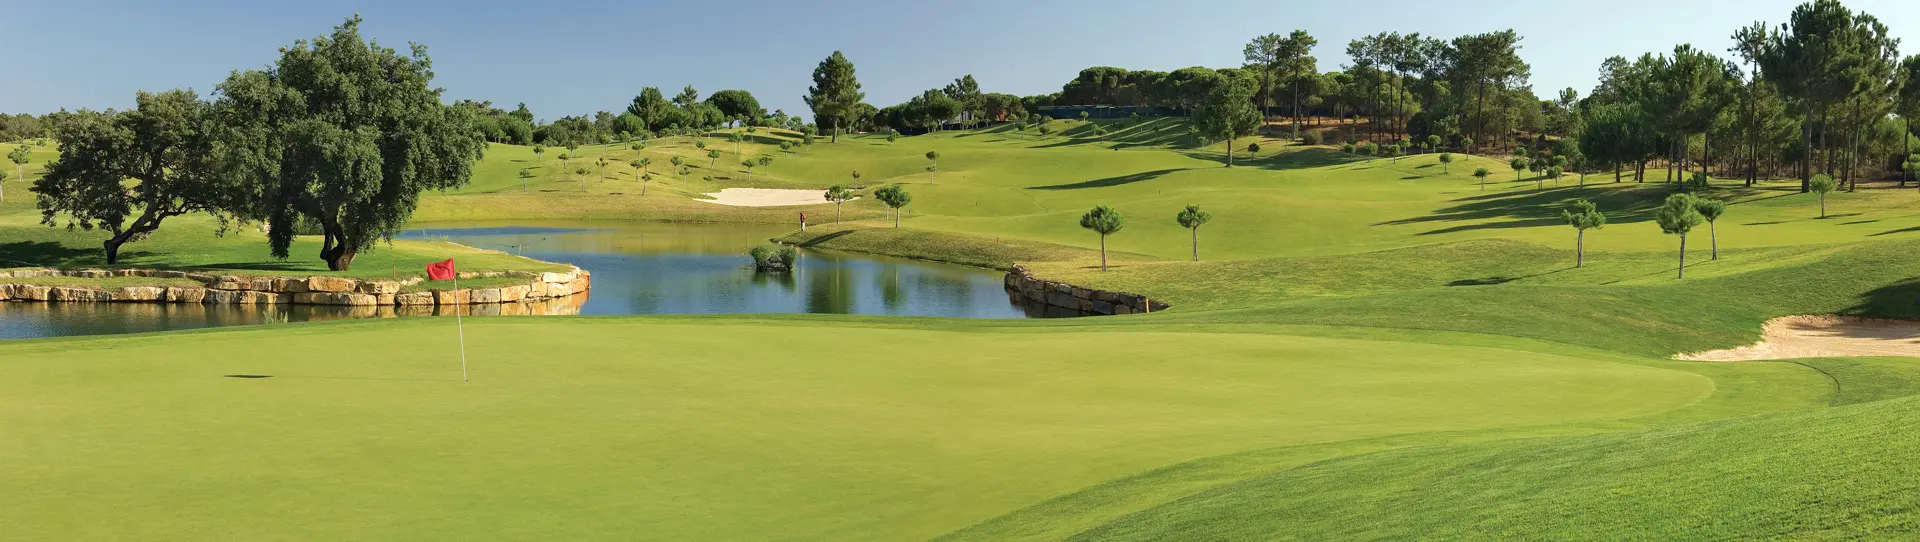 Portugal golf courses - Pinheiros Altos - Photo 1